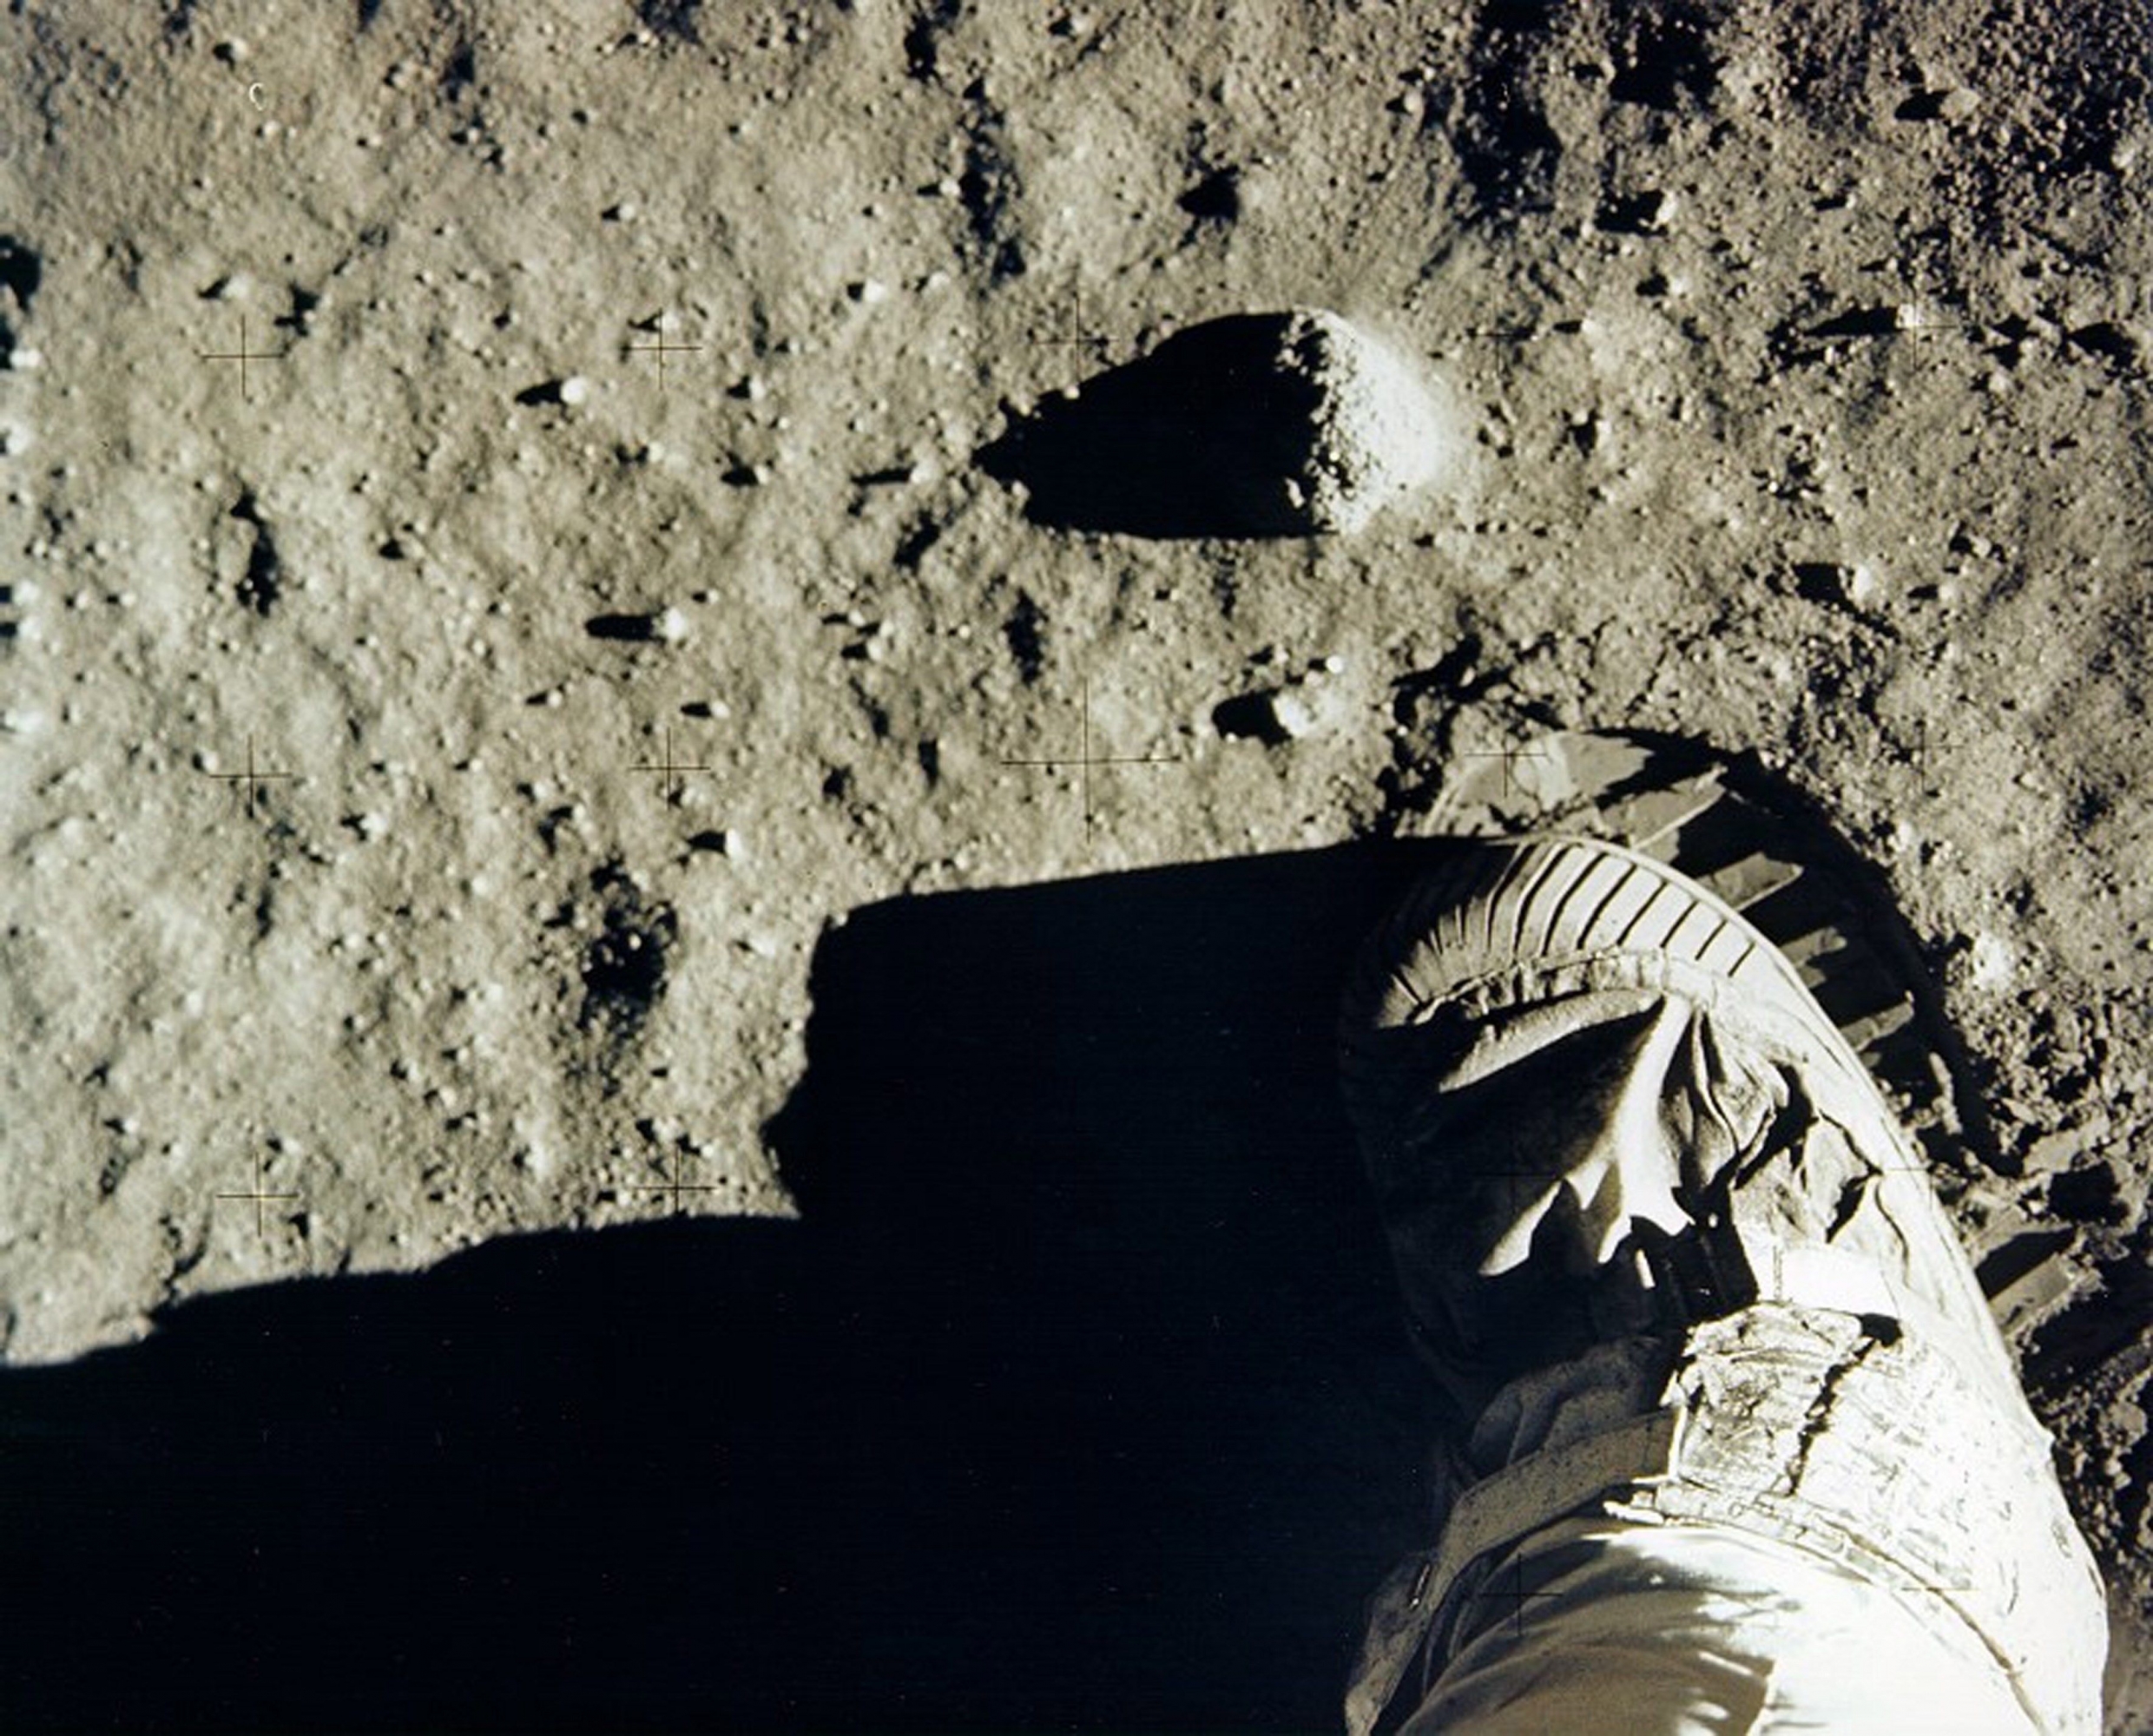 El astronauta Buzz Aldrin en suelo lunar el 20 de julio de 1969. (NASA)